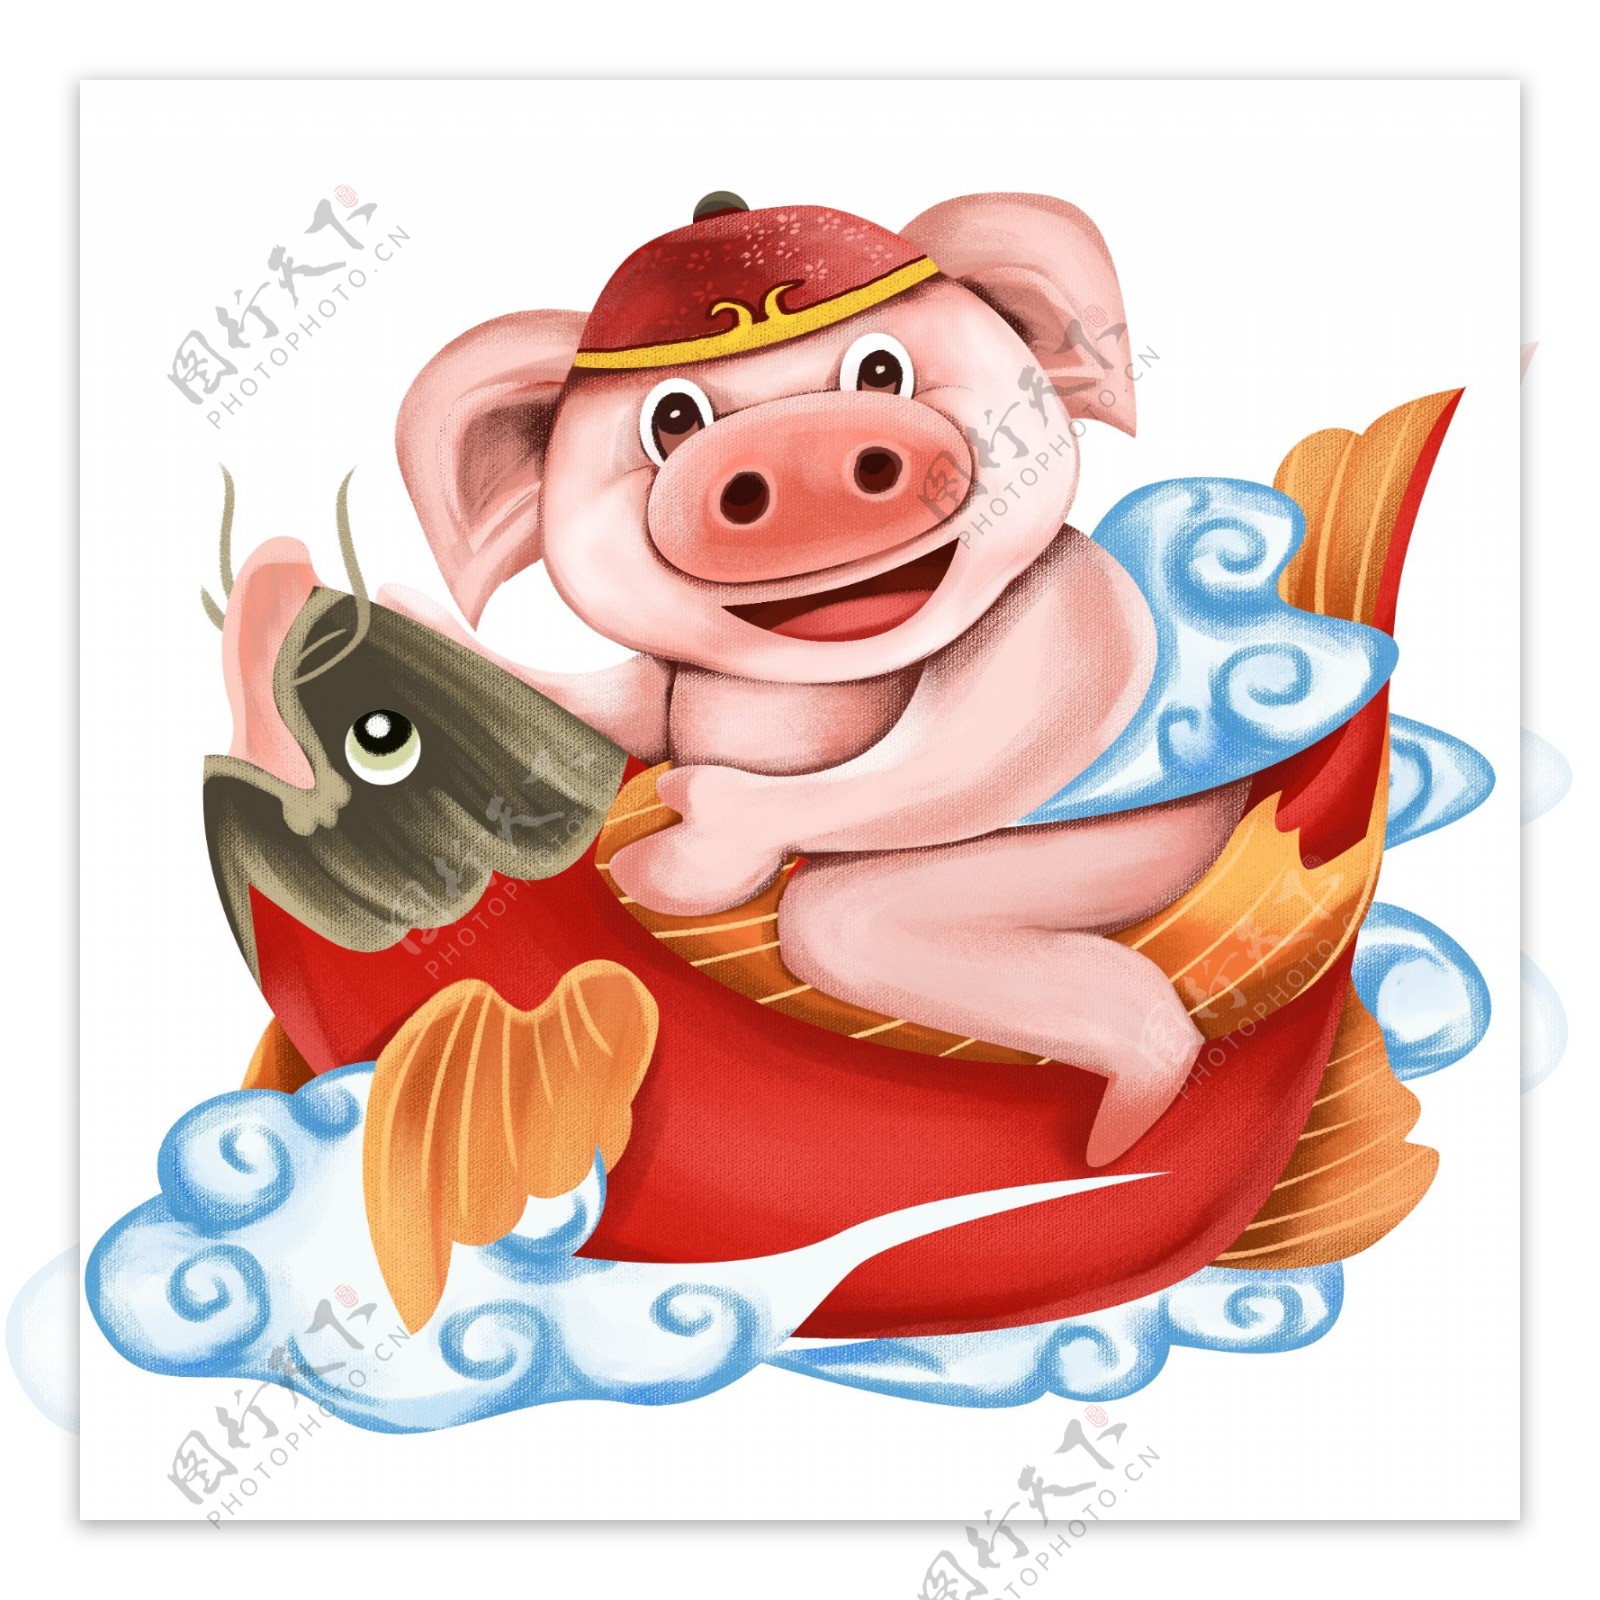 猪年插画中国传统